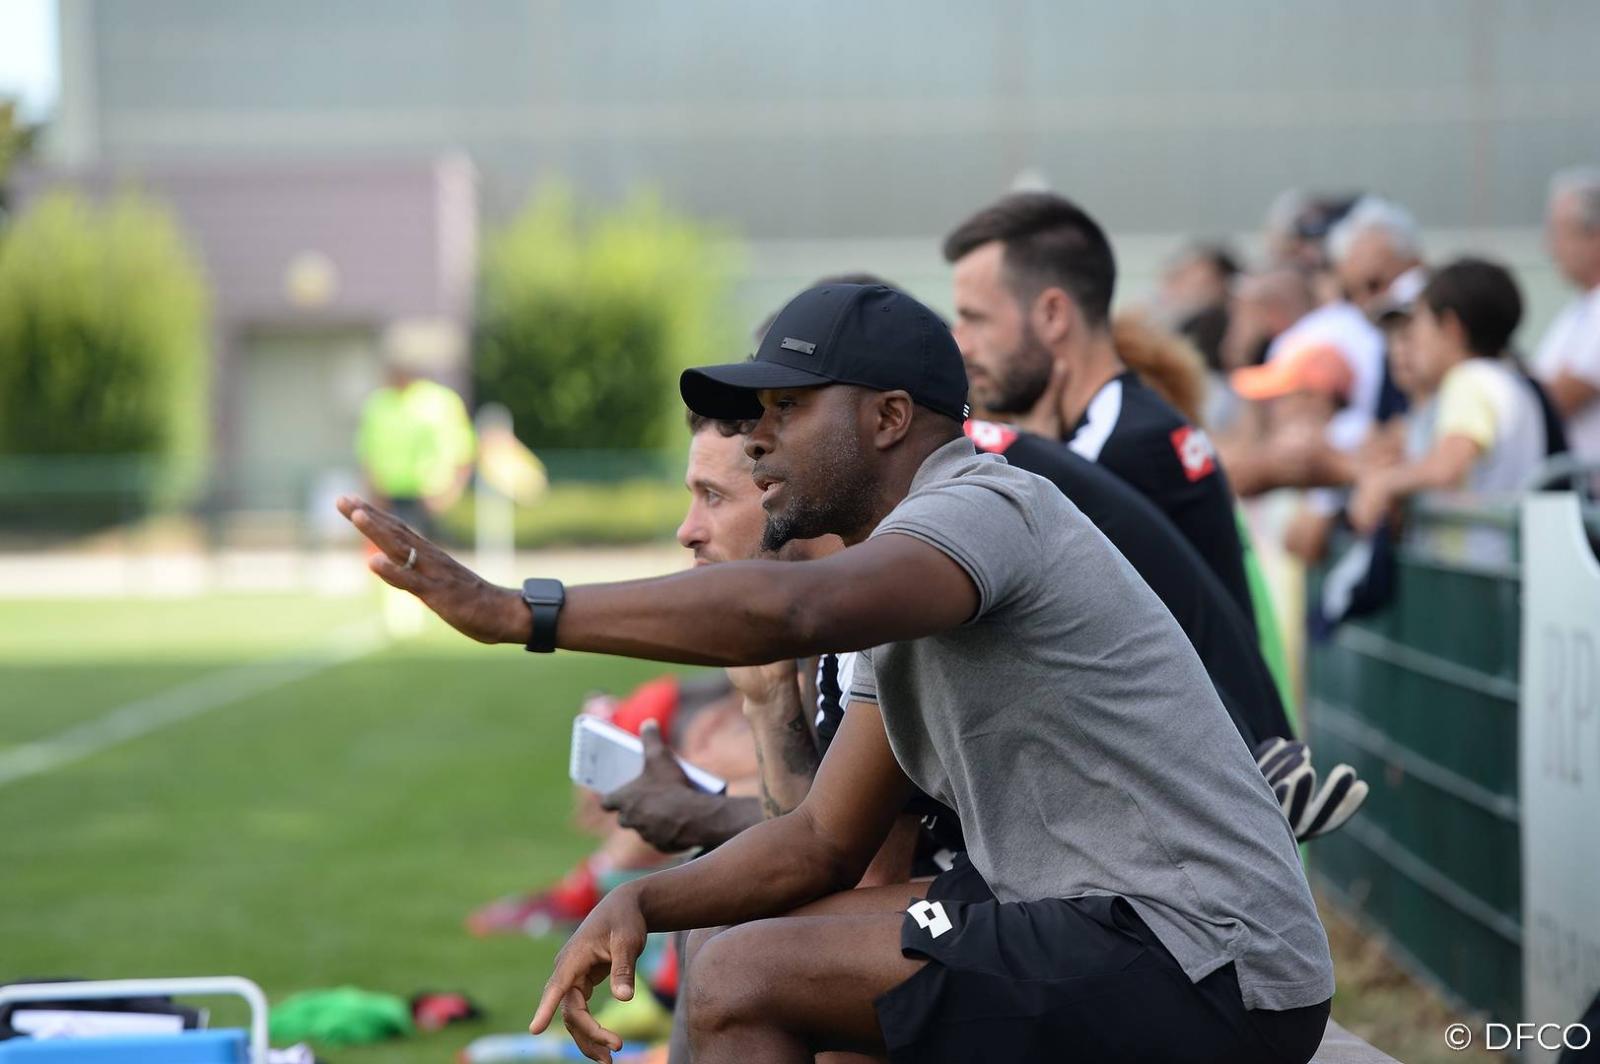 Première journée Ligue 2 : Omar Daf vise une victoire d'entrée